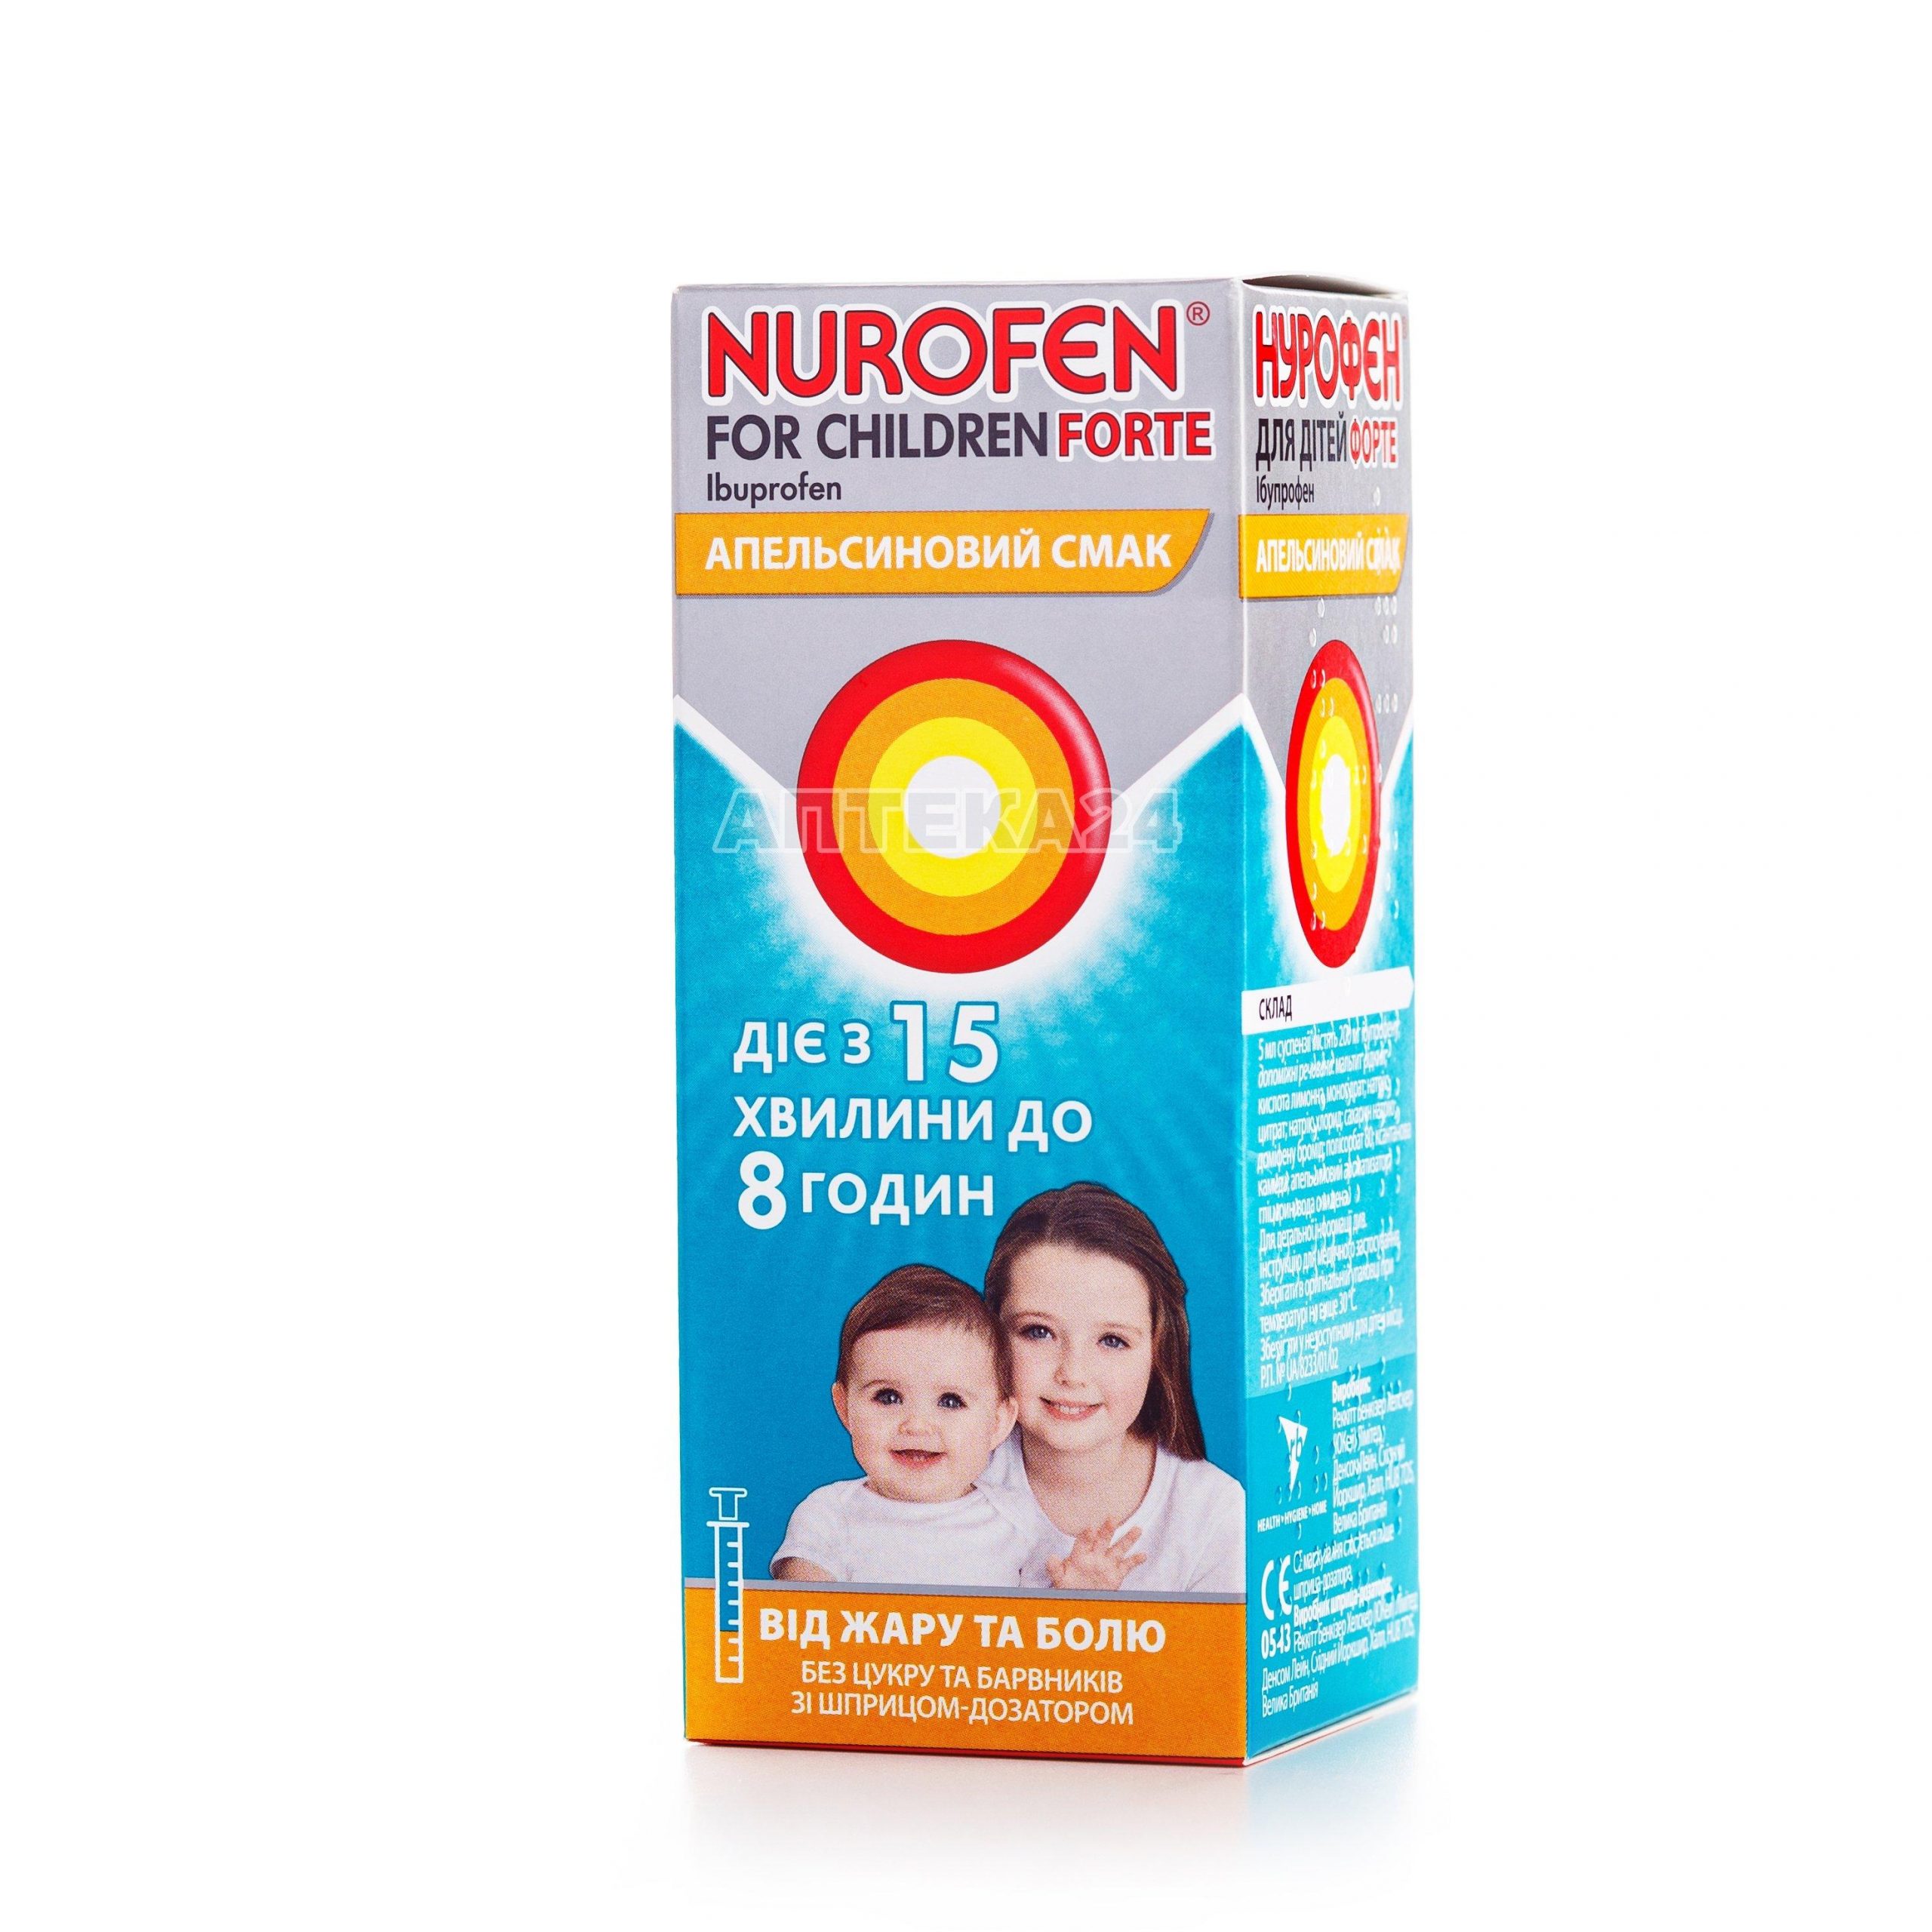 Нурофен для детей Форте суспензия с апельсиновым вкусом 100 мл_6001c6a0a20b2.jpeg